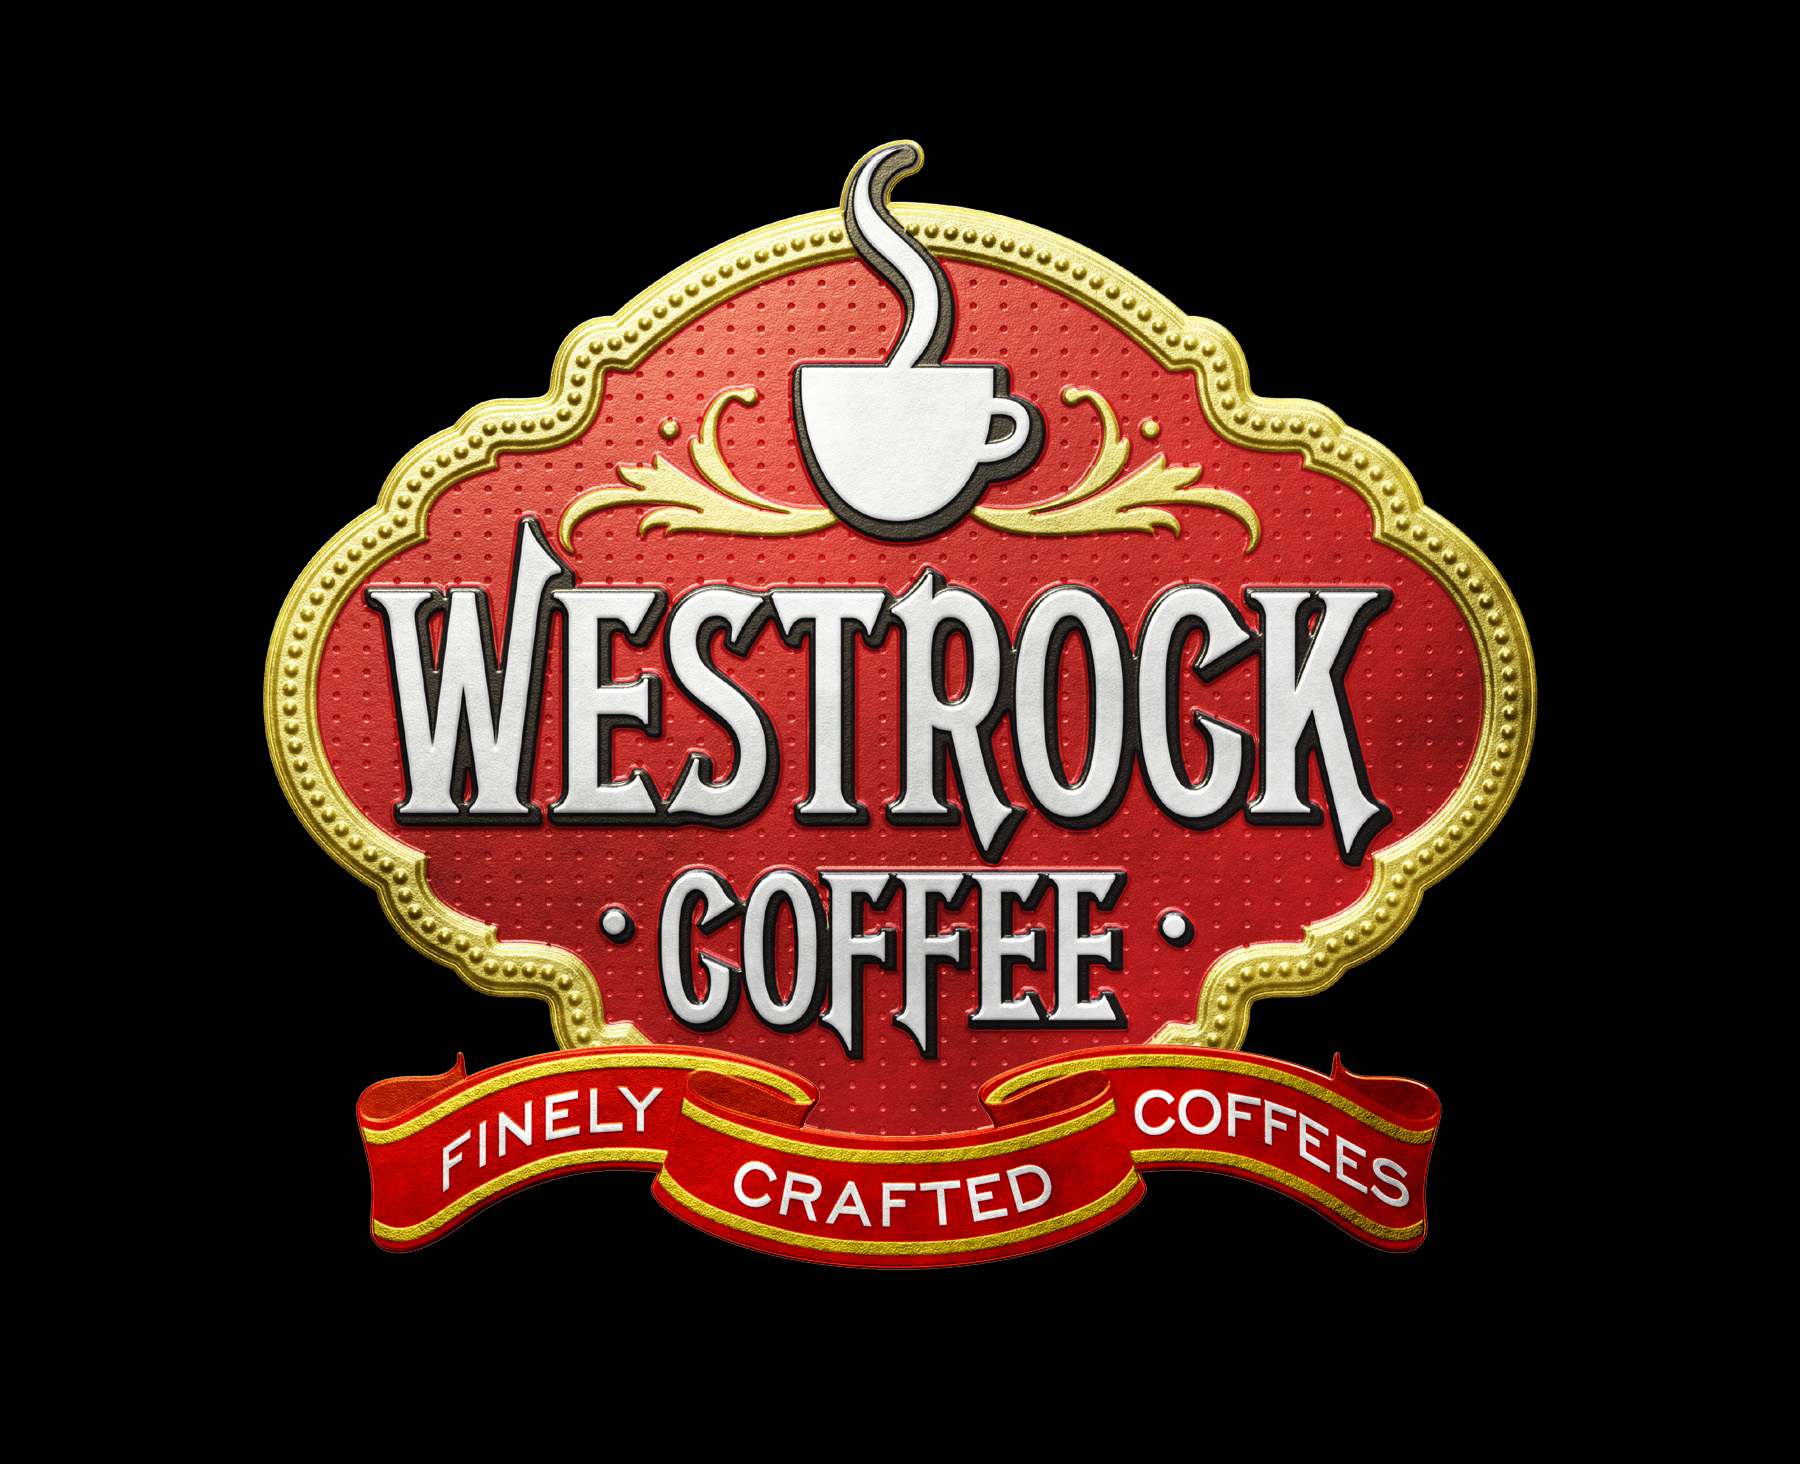 WestRock Logo